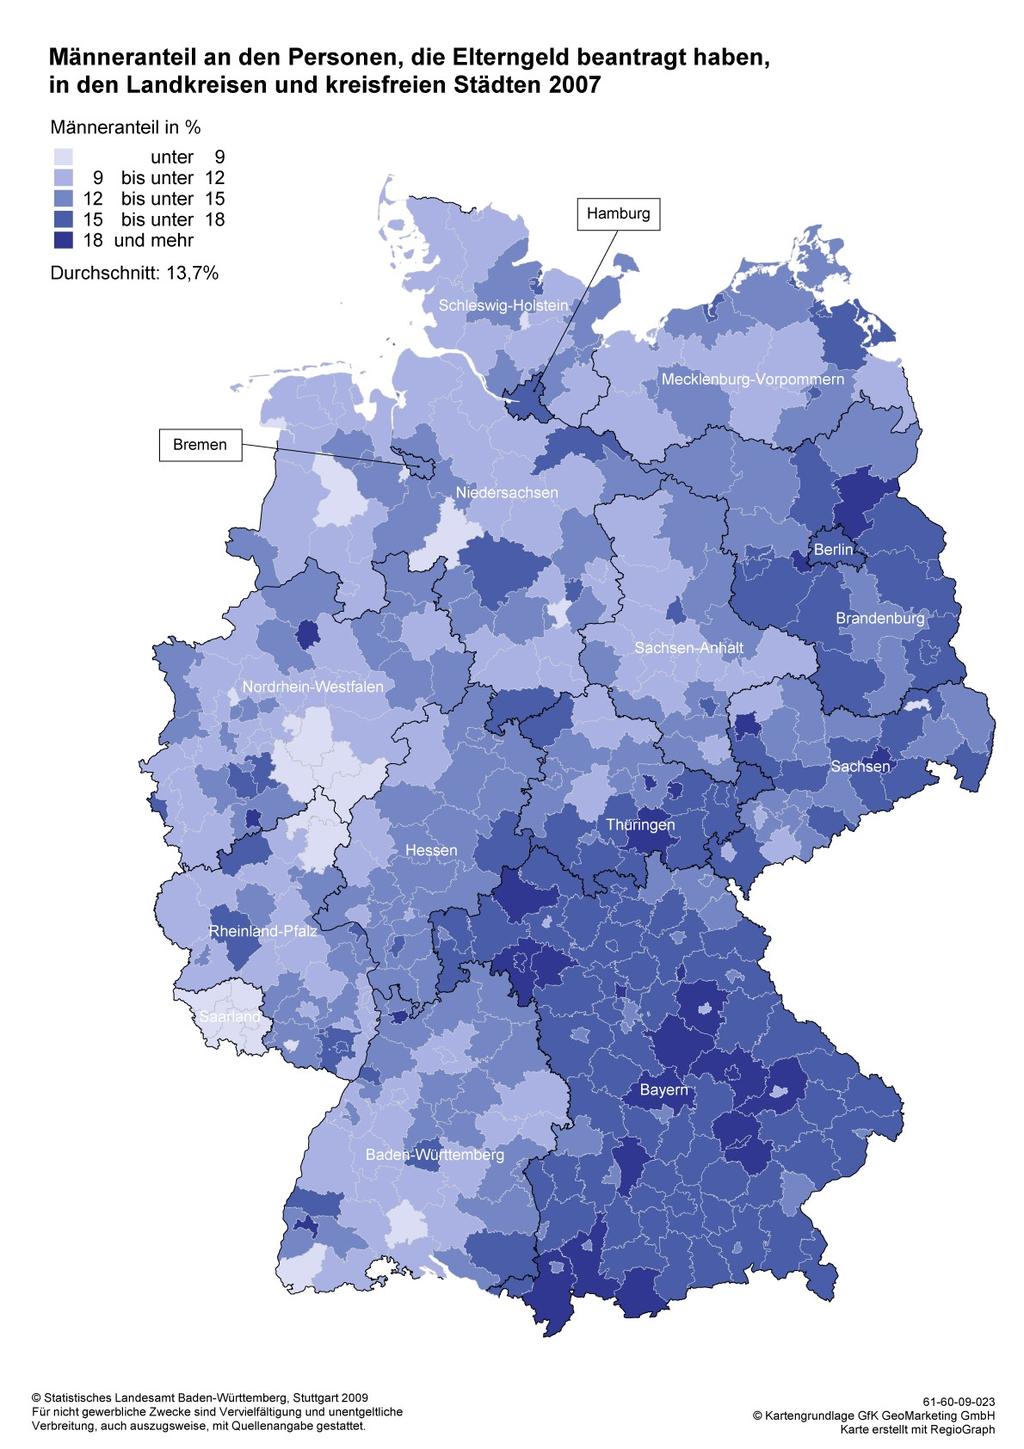 Freiburg: überdurchschnittlicher Anteil an Männern, die Elterngeld